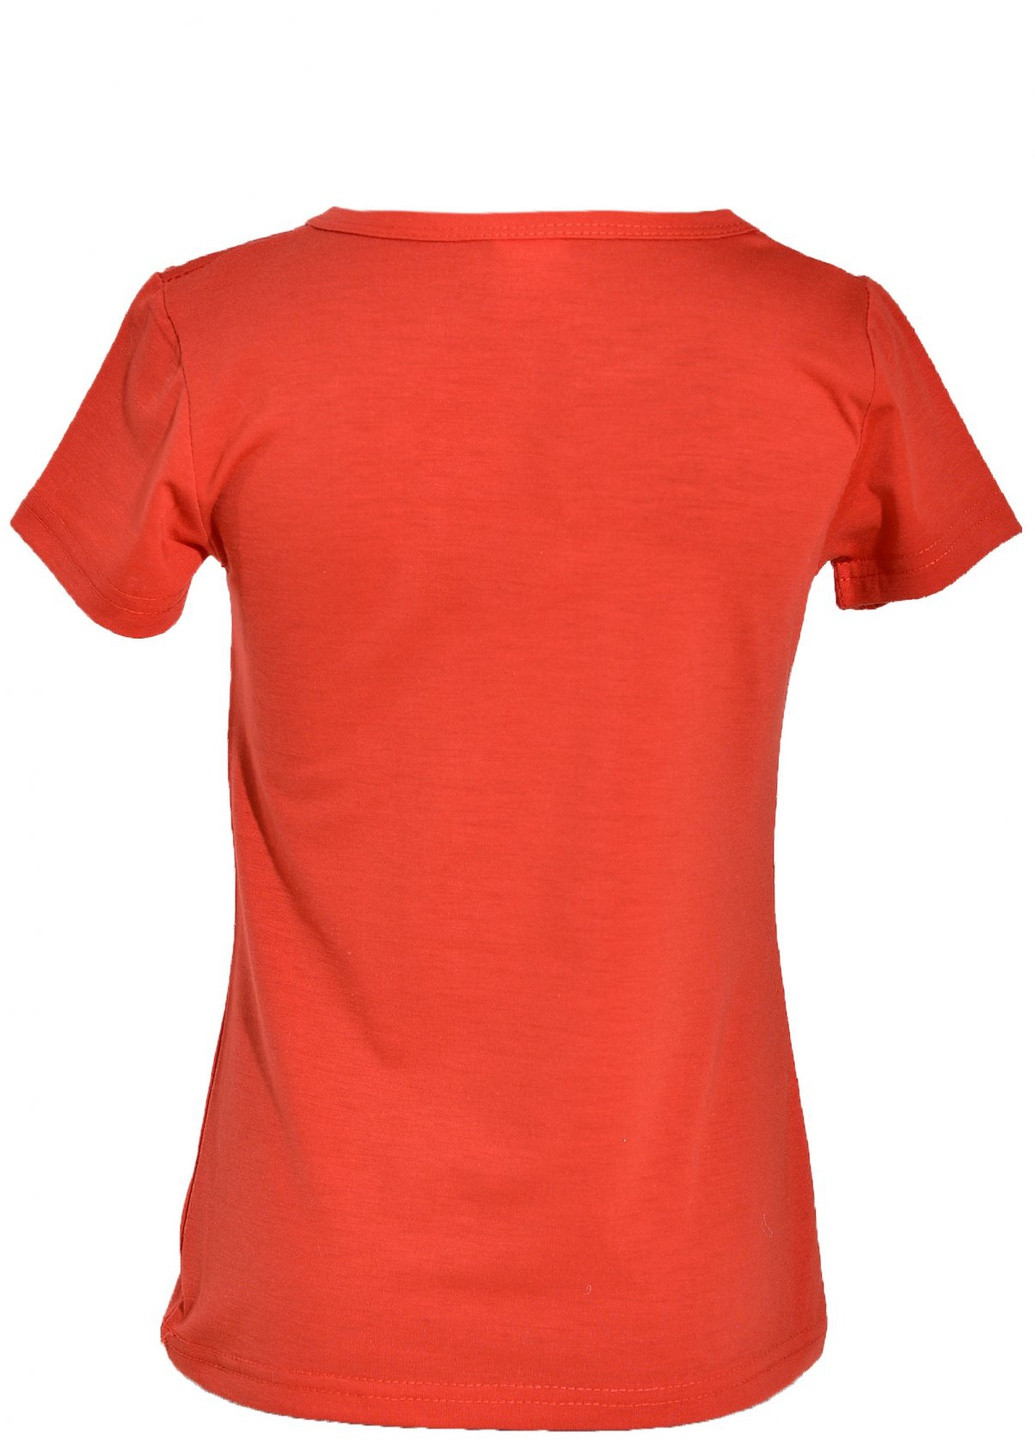 Красная футболки футболка на дівчаток (бабочка 3)16878-731 Lemanta